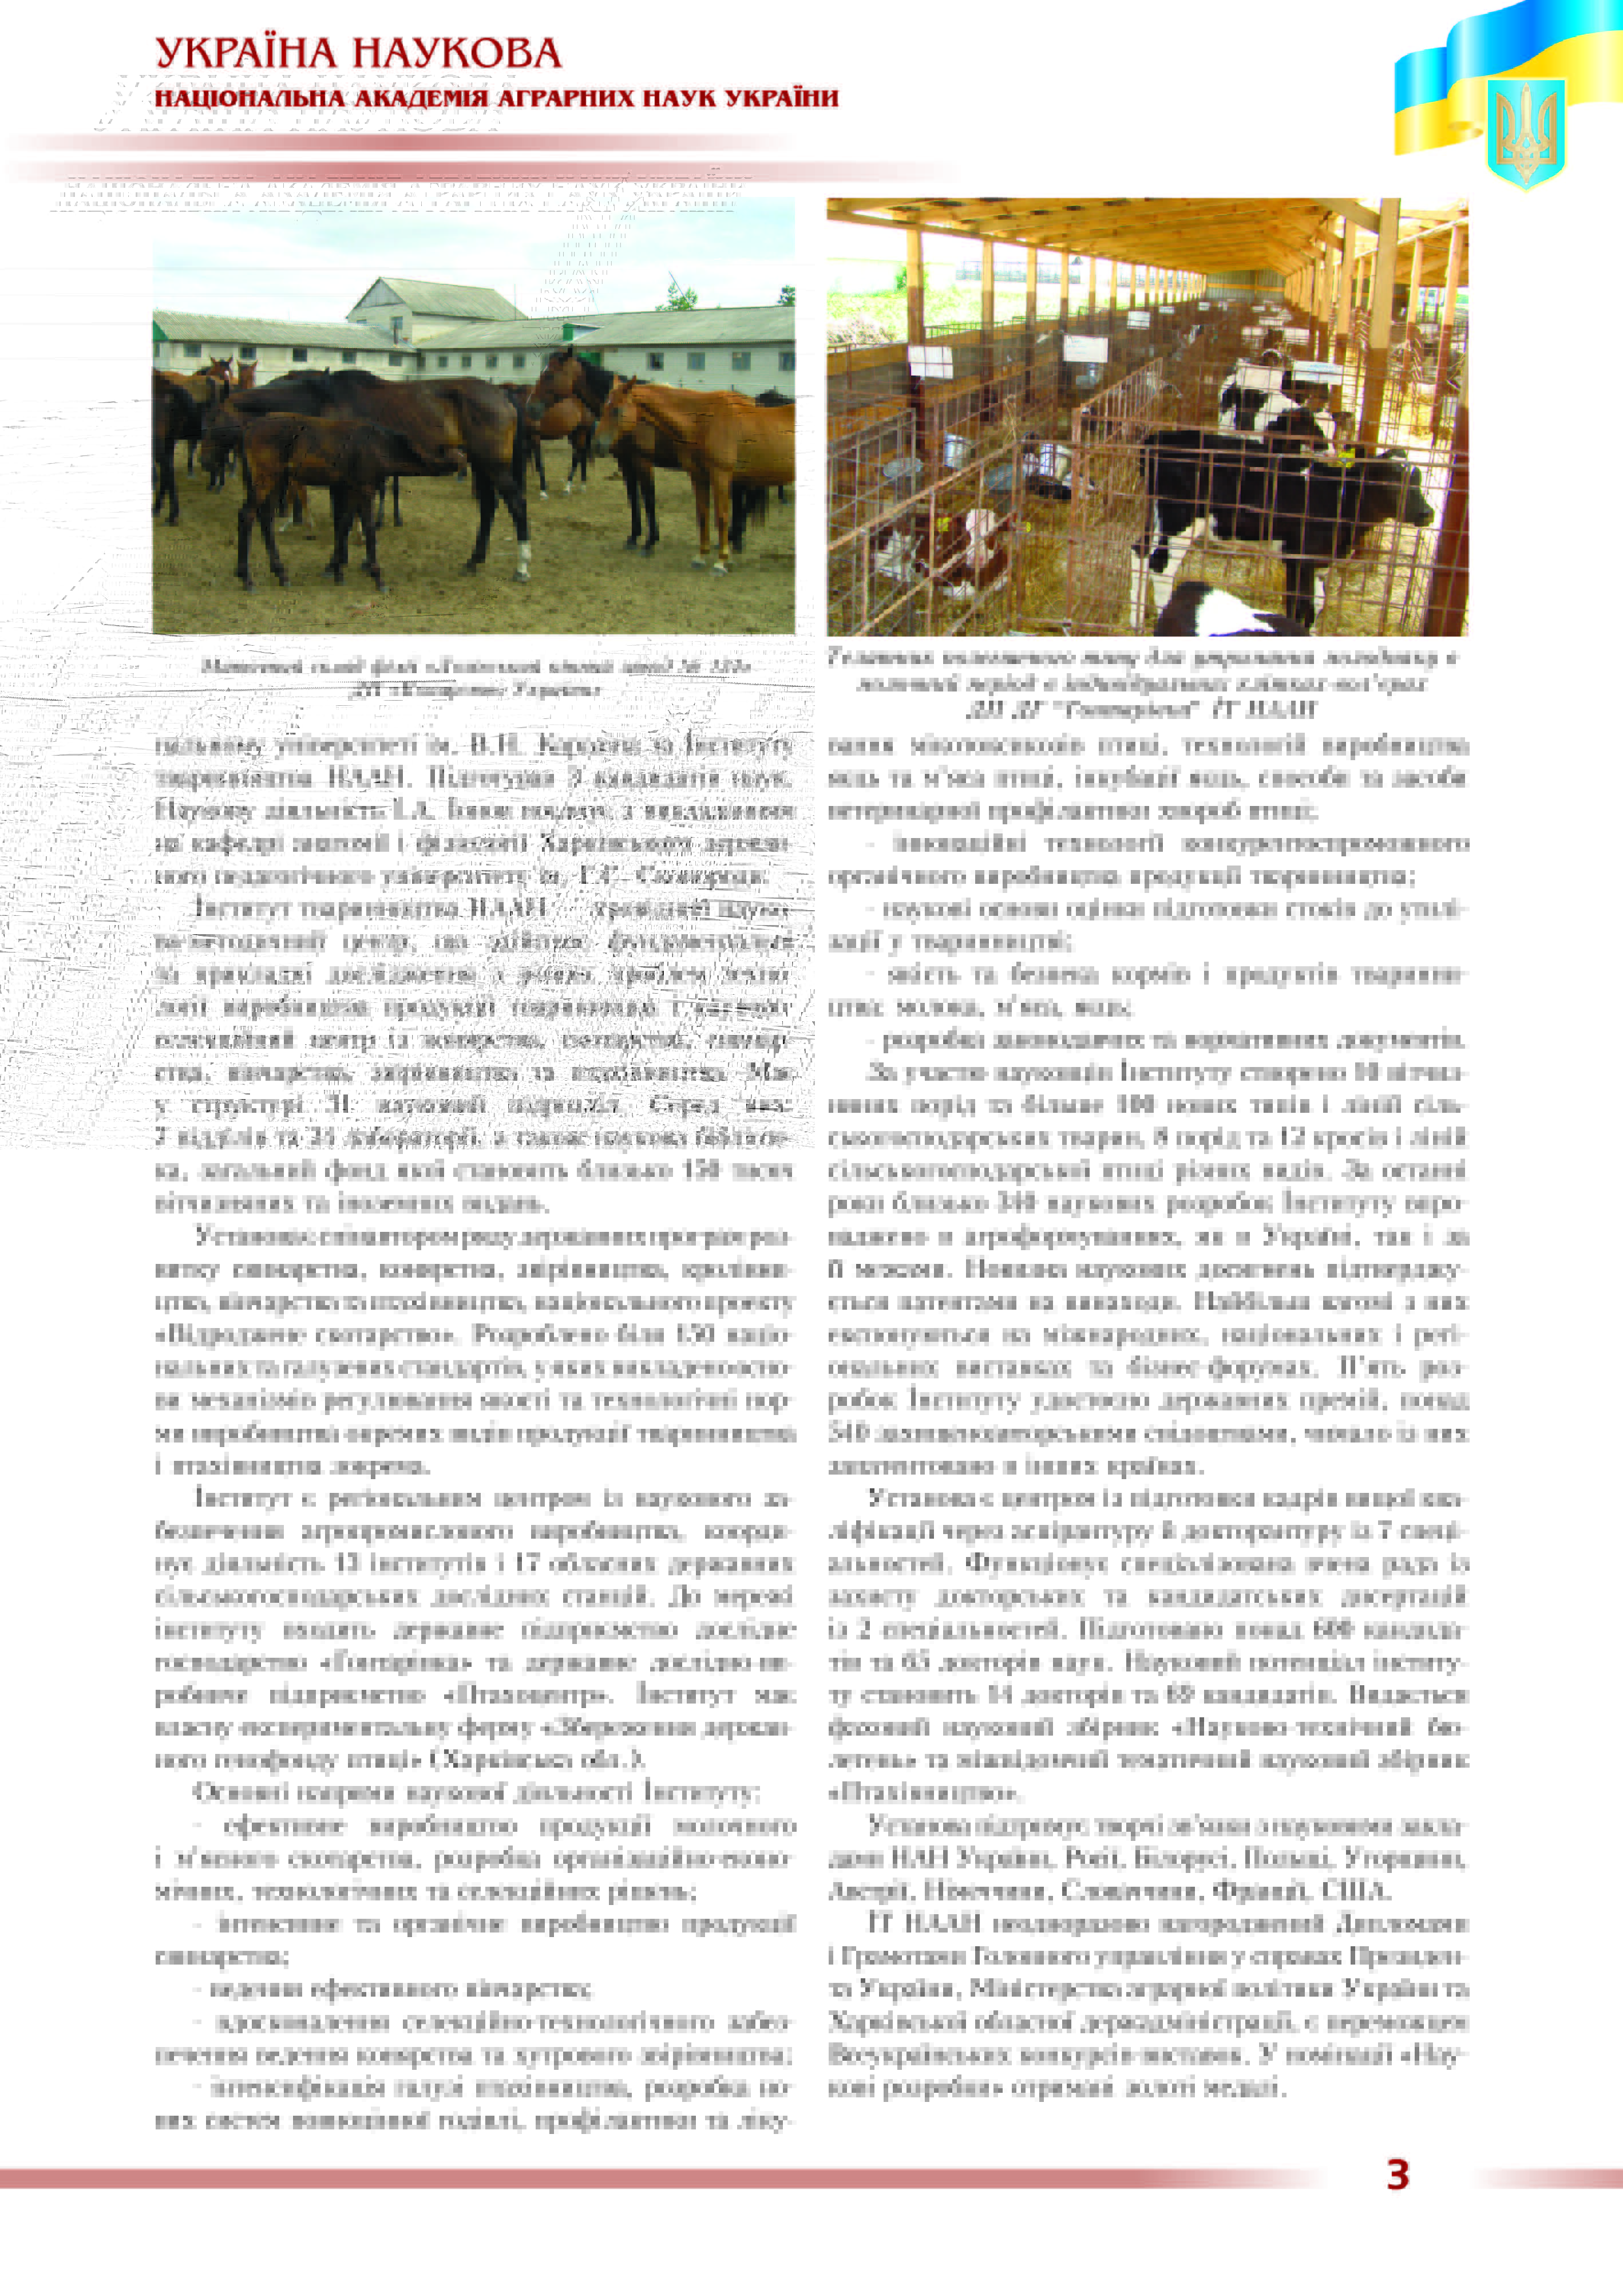 Інститут тваринництва Національної академії аграрних наук України